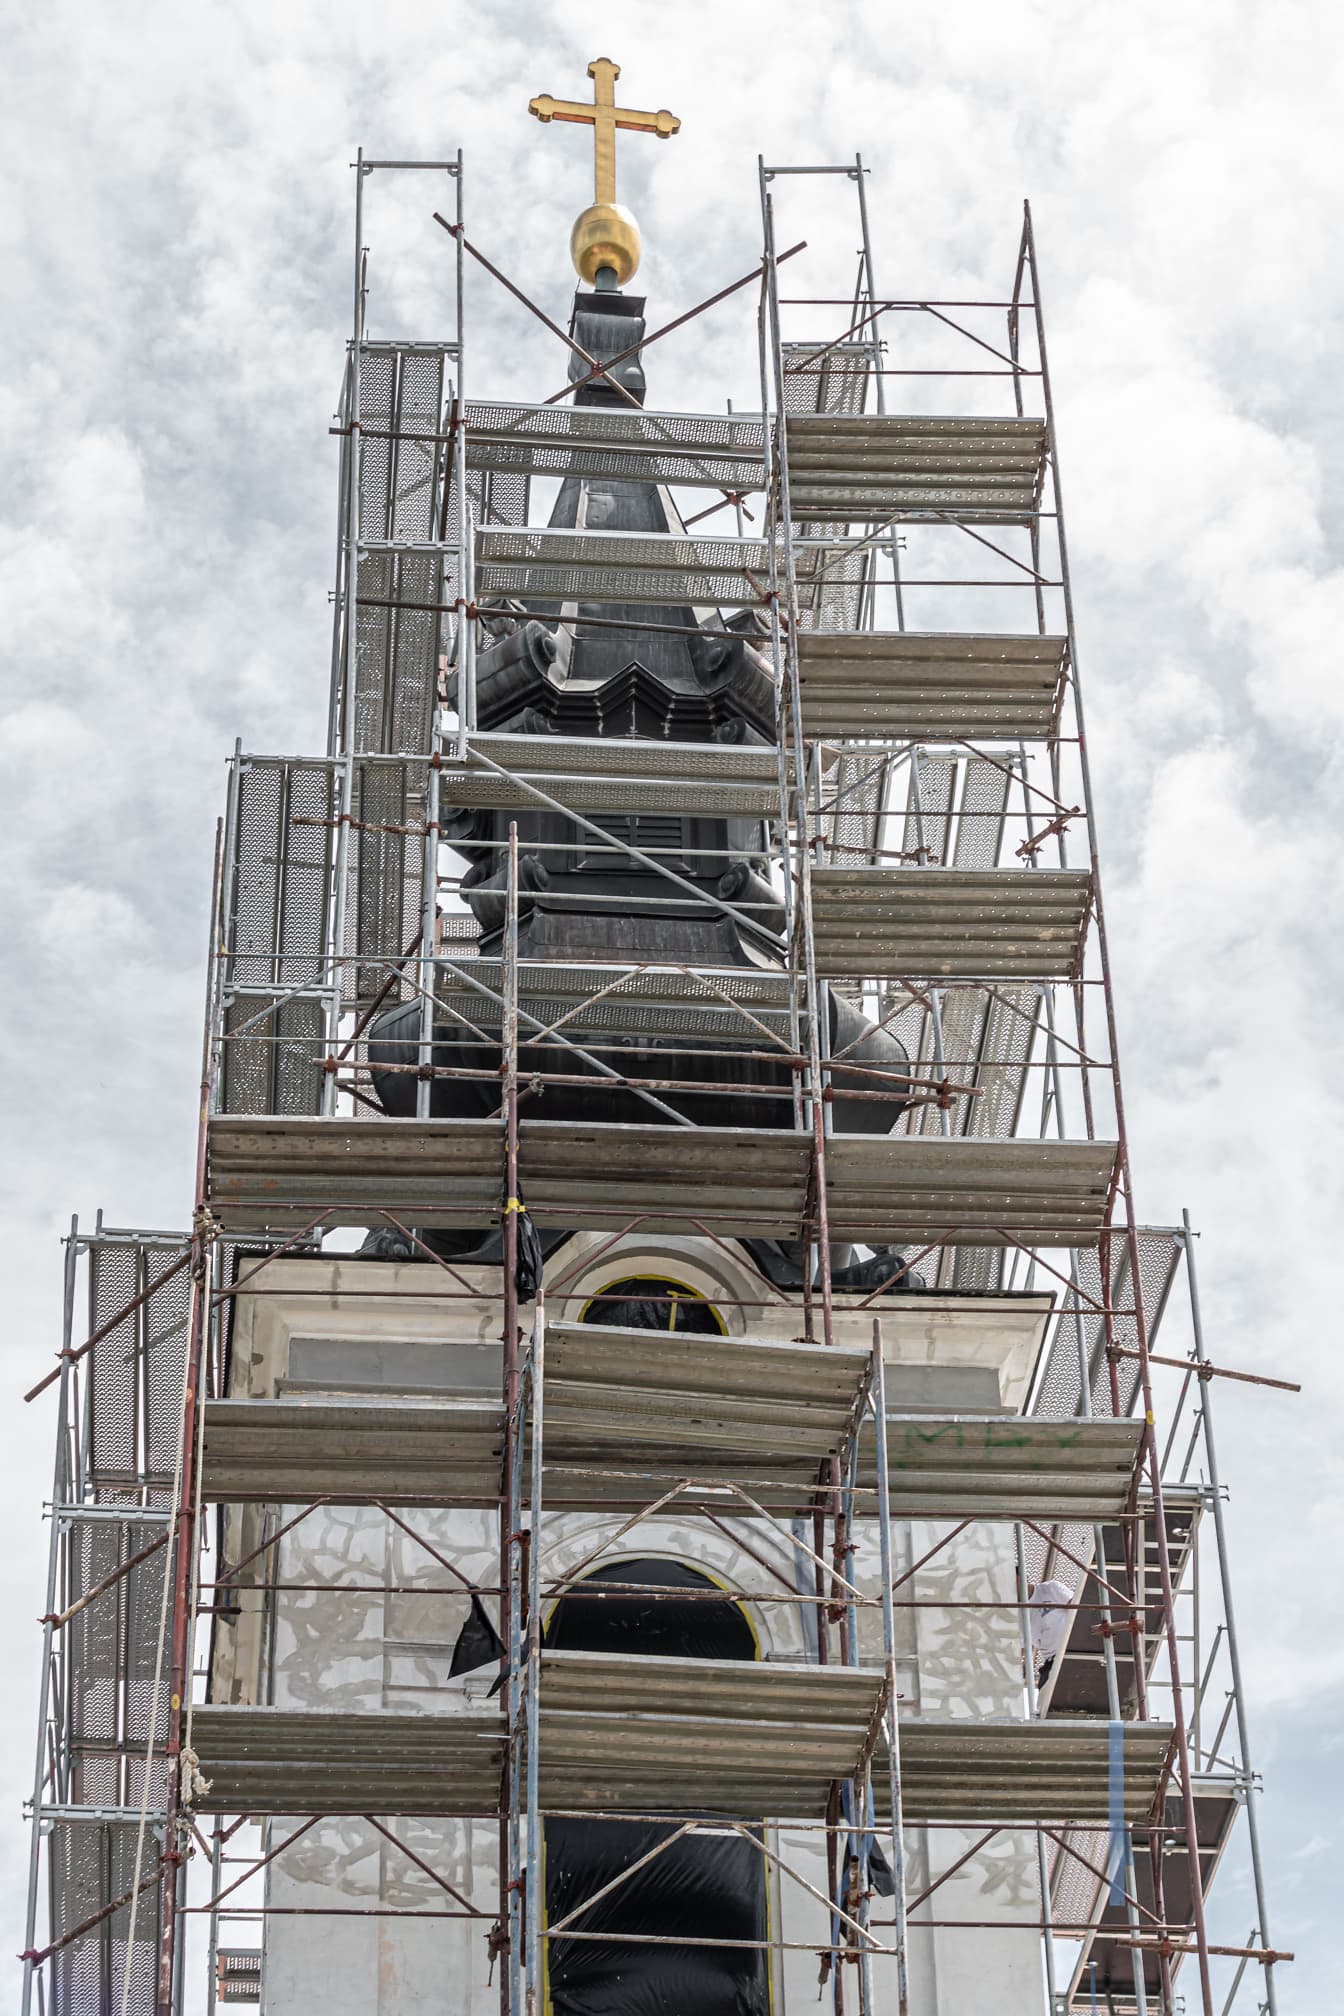 Rekonstrukcja wieży kościelnej pracująca na wysokich stanowiskach pracy